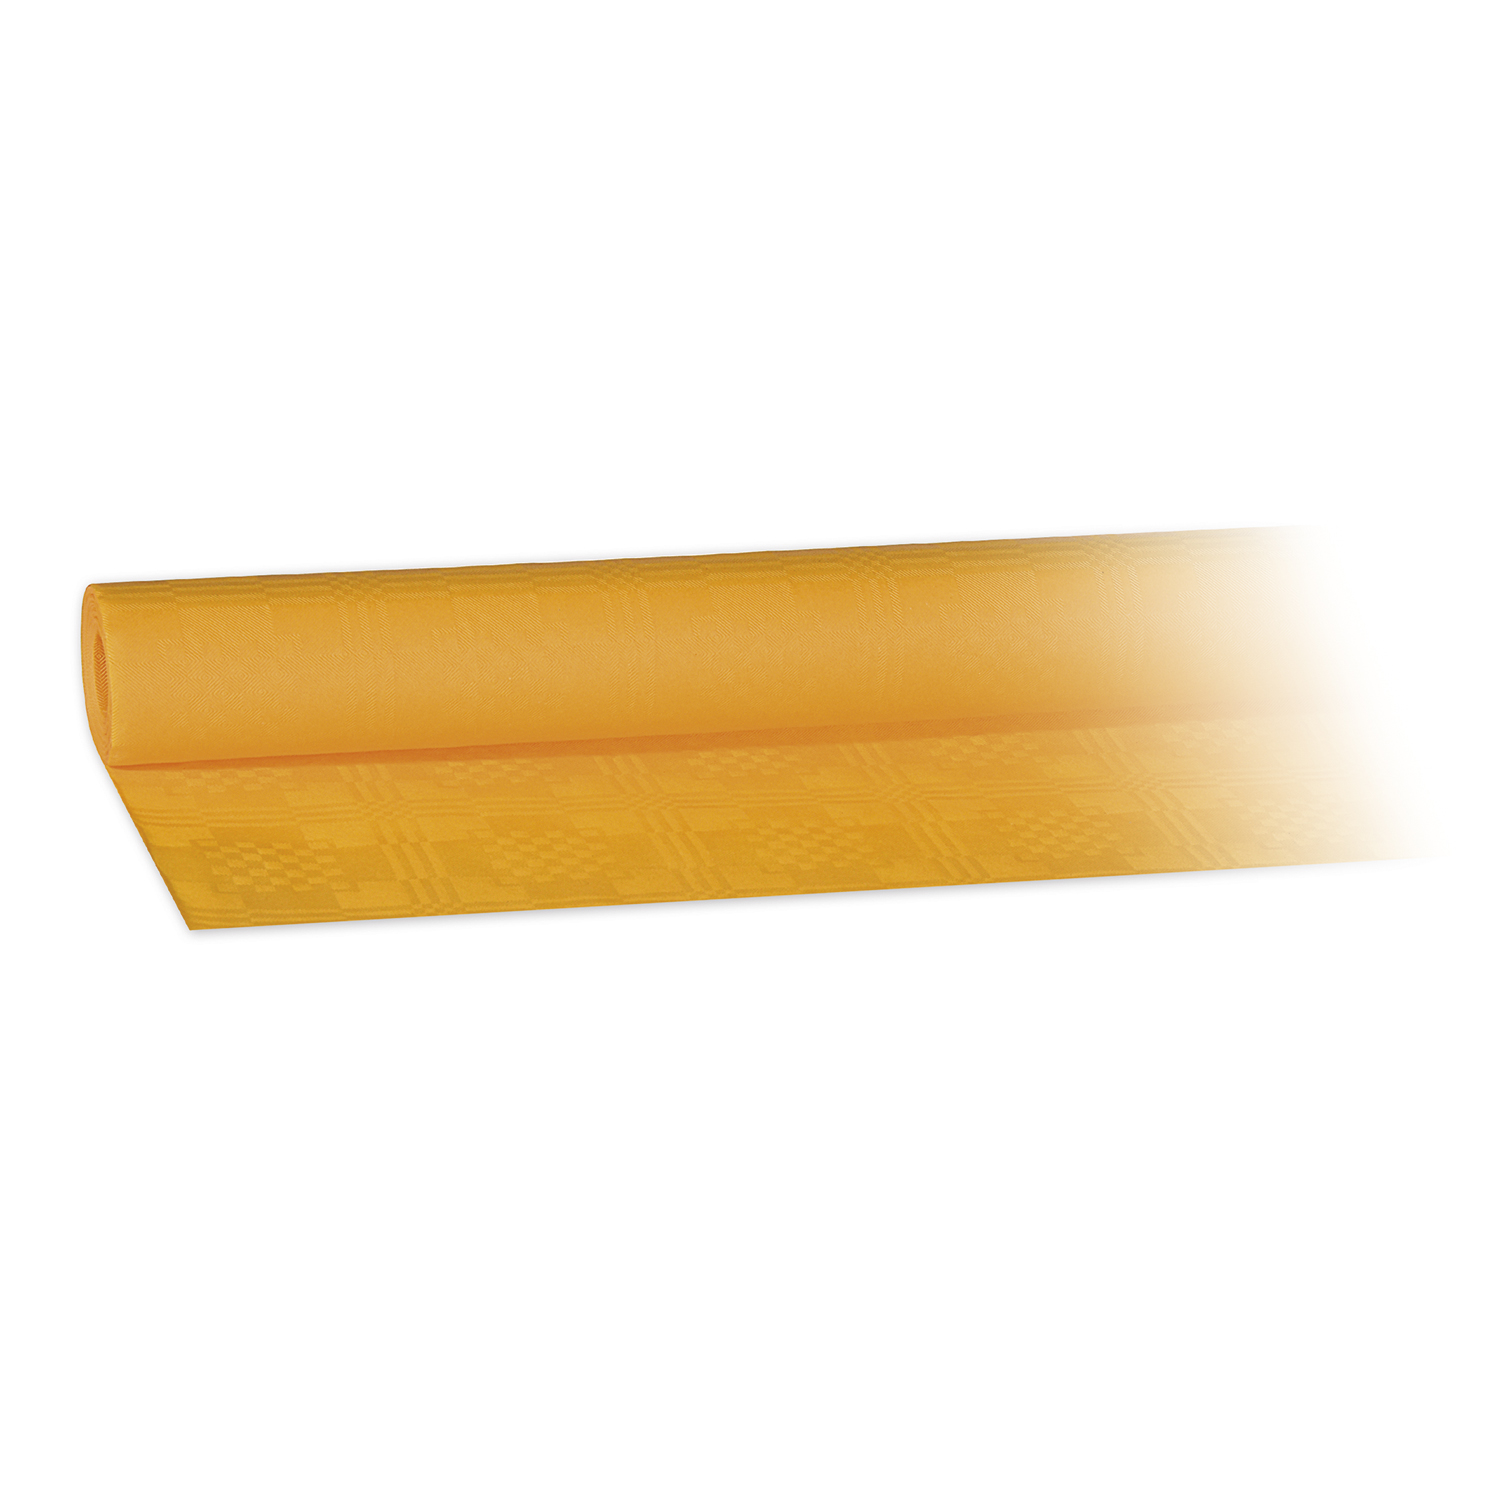 Damasttischtuch (PAP) gerollt gelb 1,2 x 8 m - 1 Stück